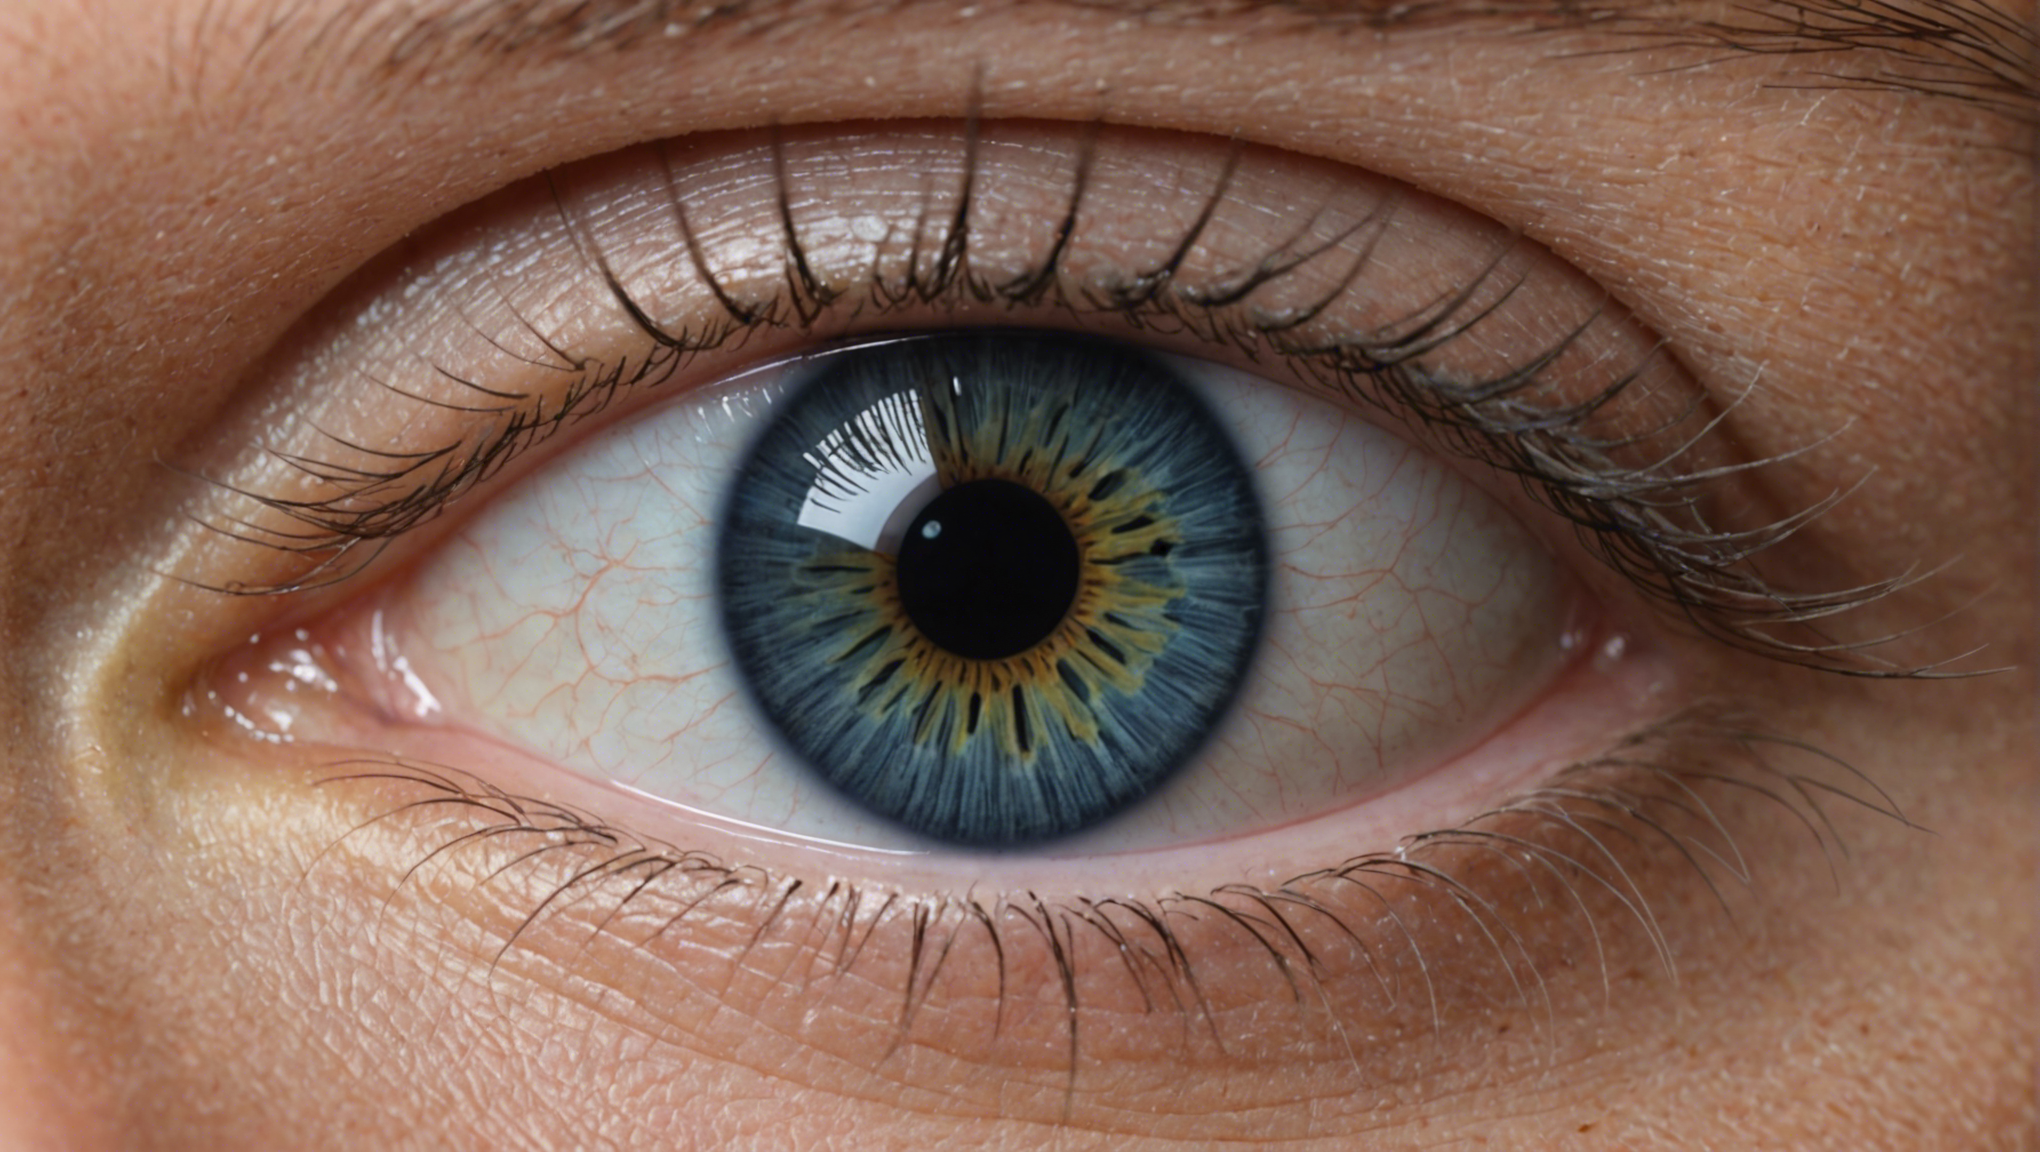 découvrez tout ce qu'il faut savoir sur l'implantation de lentilles intraoculaires, une procédure chirurgicale pour corriger la vision.